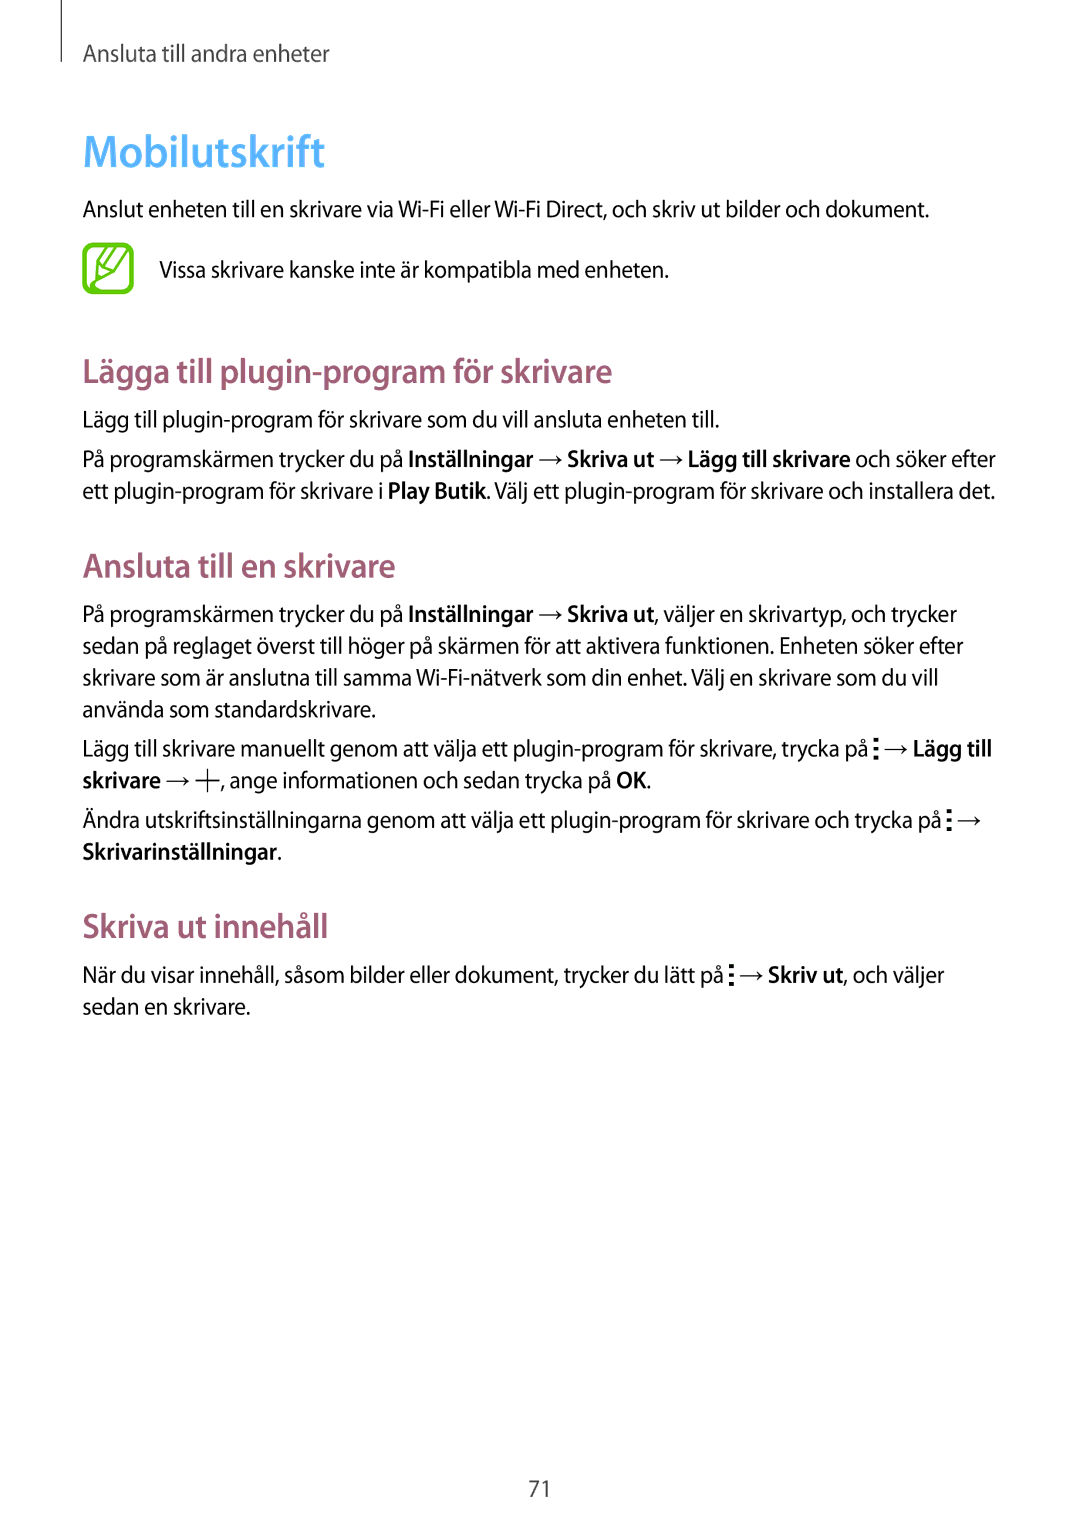 Samsung SM-G360FZSANEE Mobilutskrift, Lägga till plugin-program för skrivare, Ansluta till en skrivare, Skriva ut innehåll 